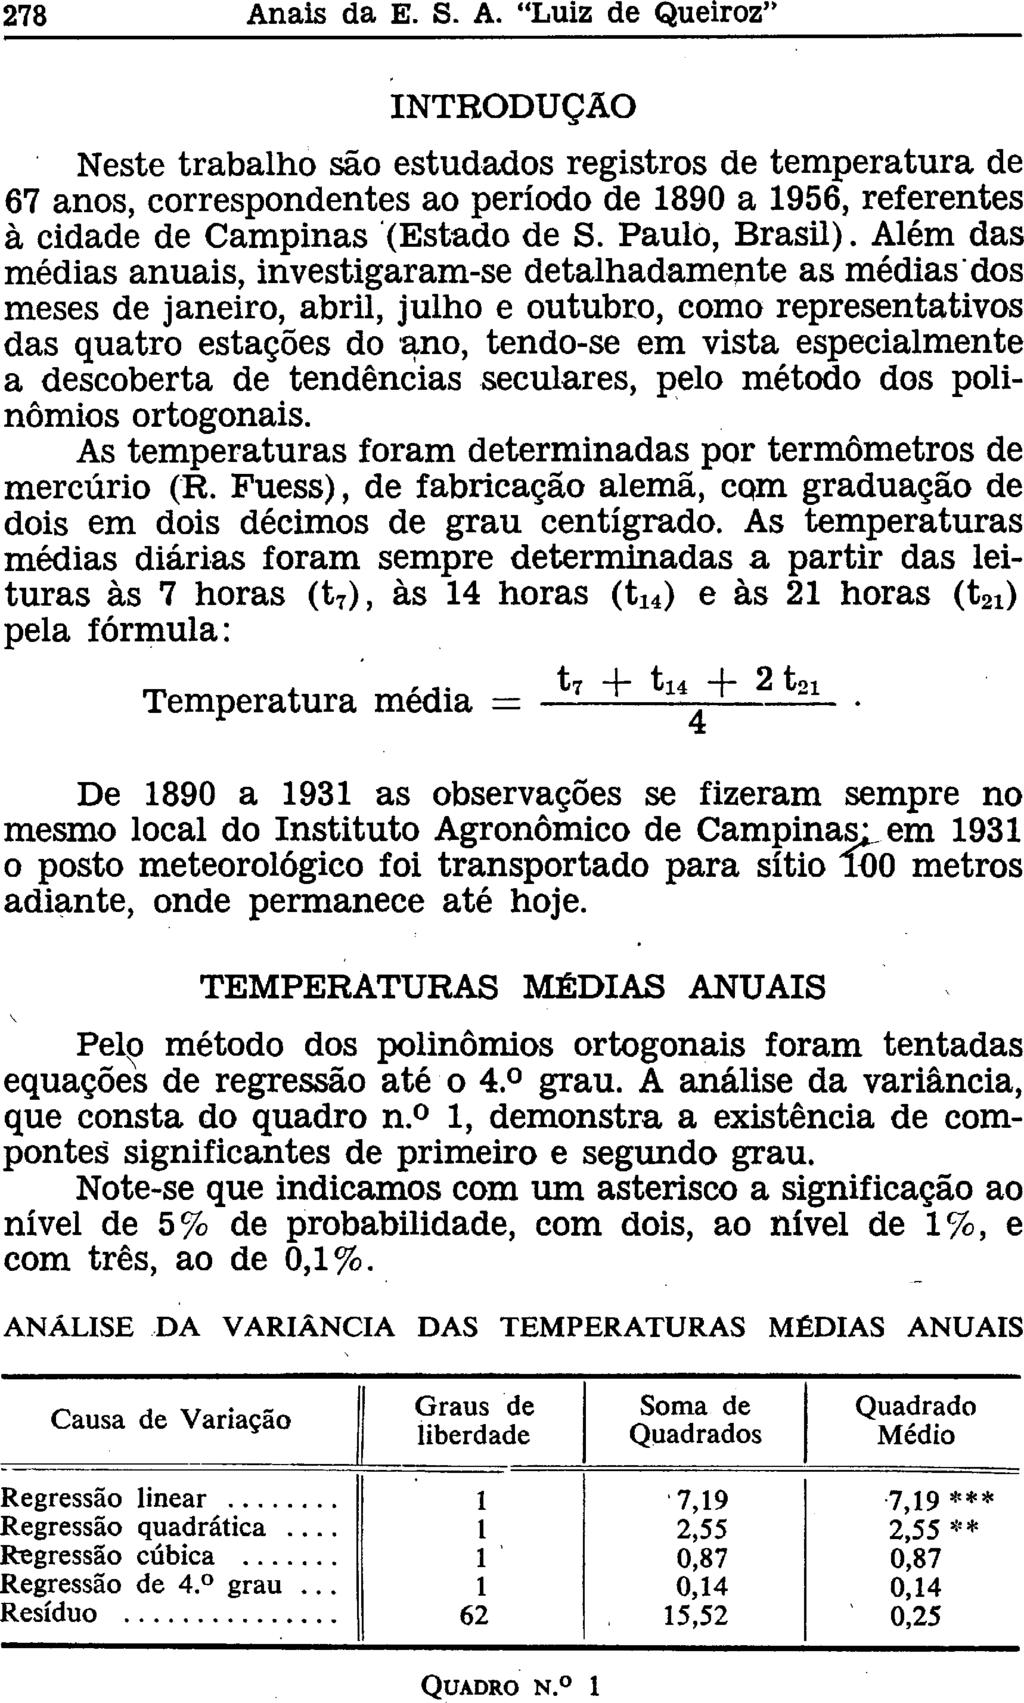 INTRODUÇÃO Neste trabalho são estudados registros de temperatura de 67 anos, correspondentes ao período de 1890 a 1956, referentes à cidade de Campinas (Estado de S. Paulo, Brasil).